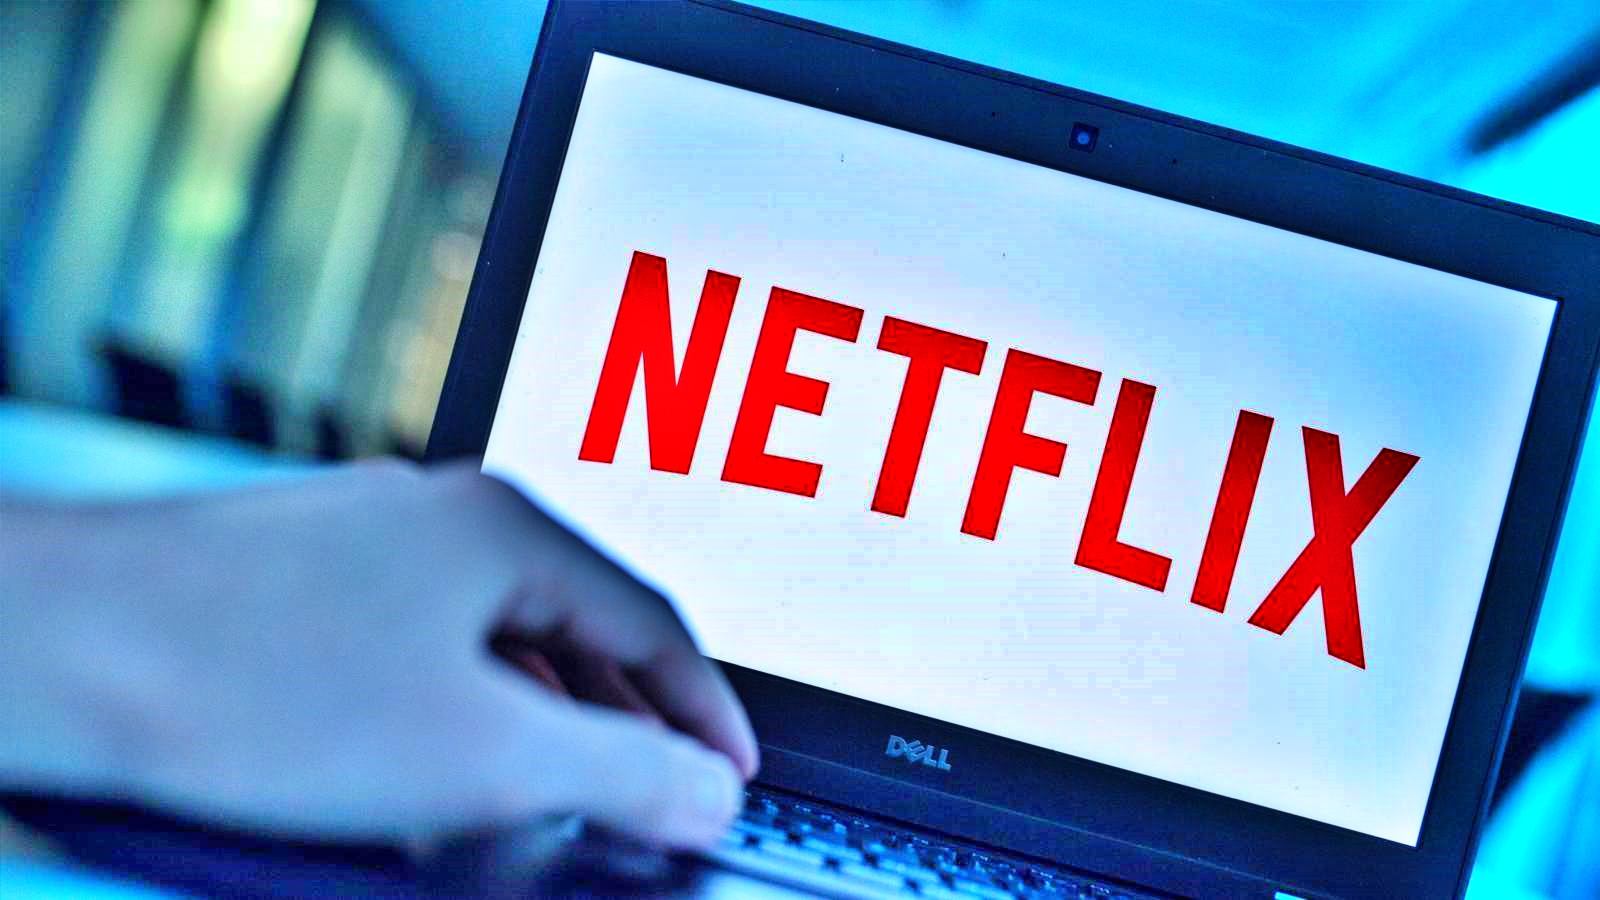 Netflix tillkännager ett KONTROVERSIELT beslut som överraskade många